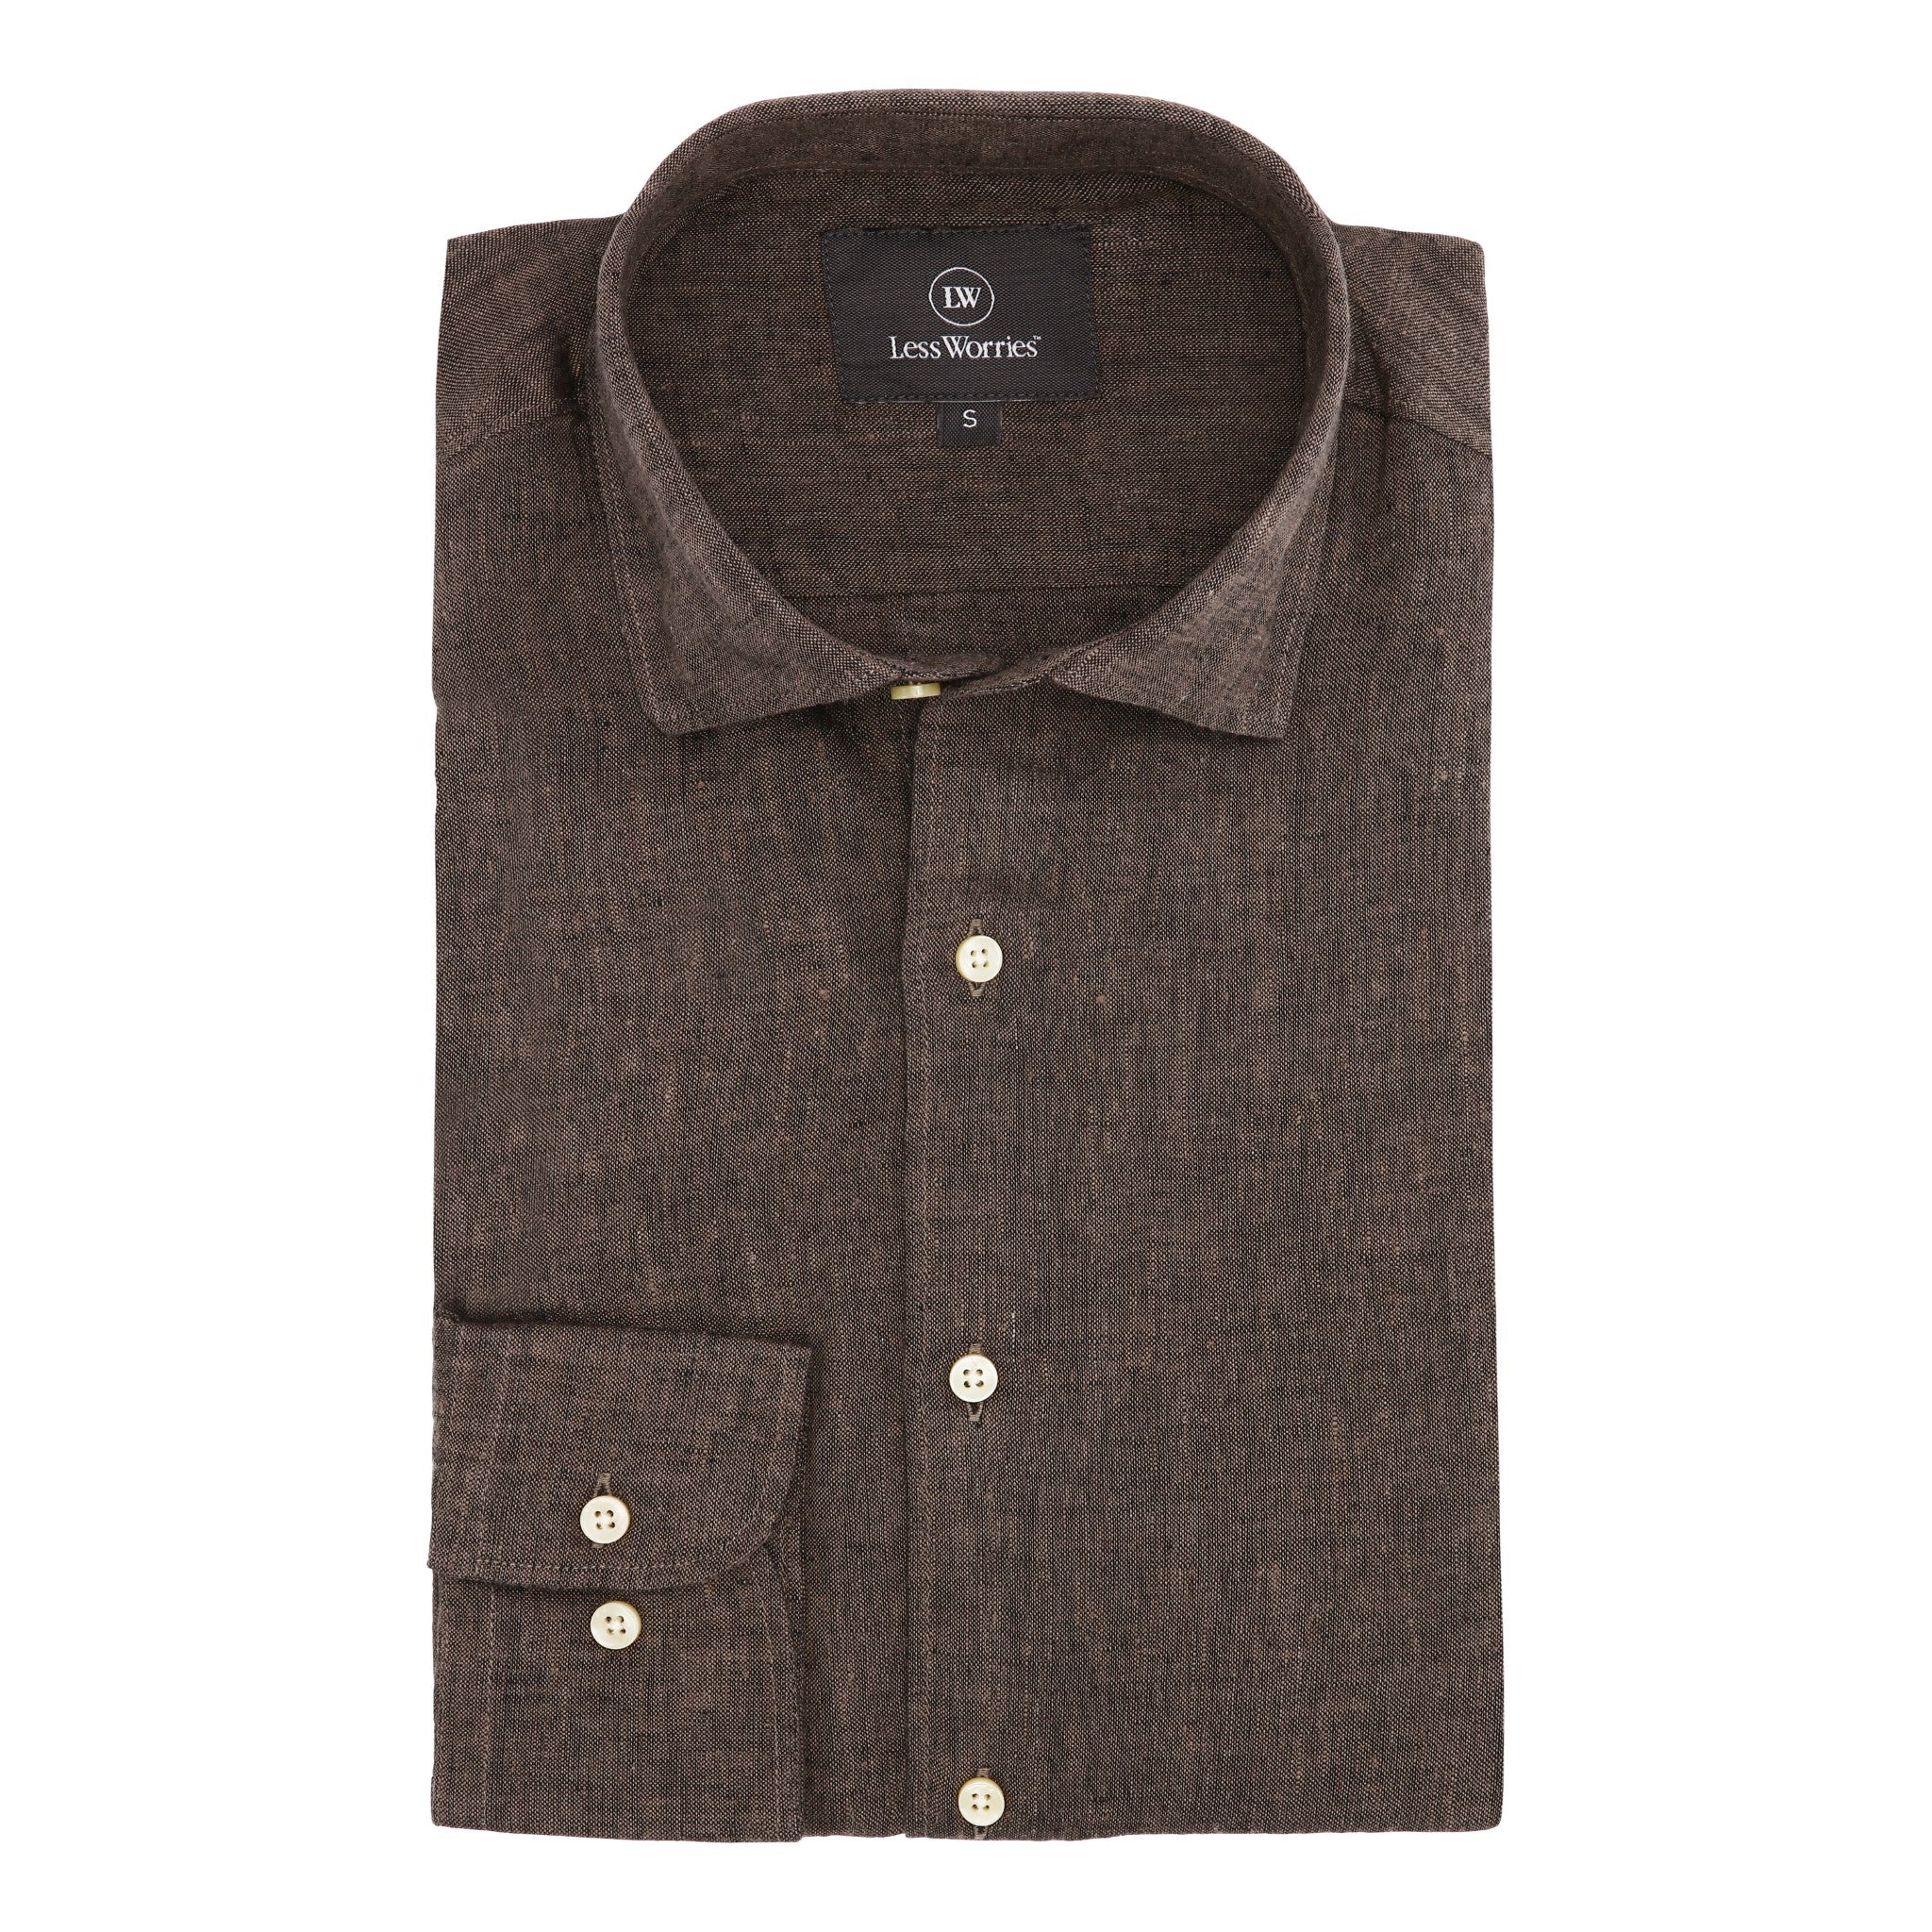 Brown linen shirt in 100% linen.